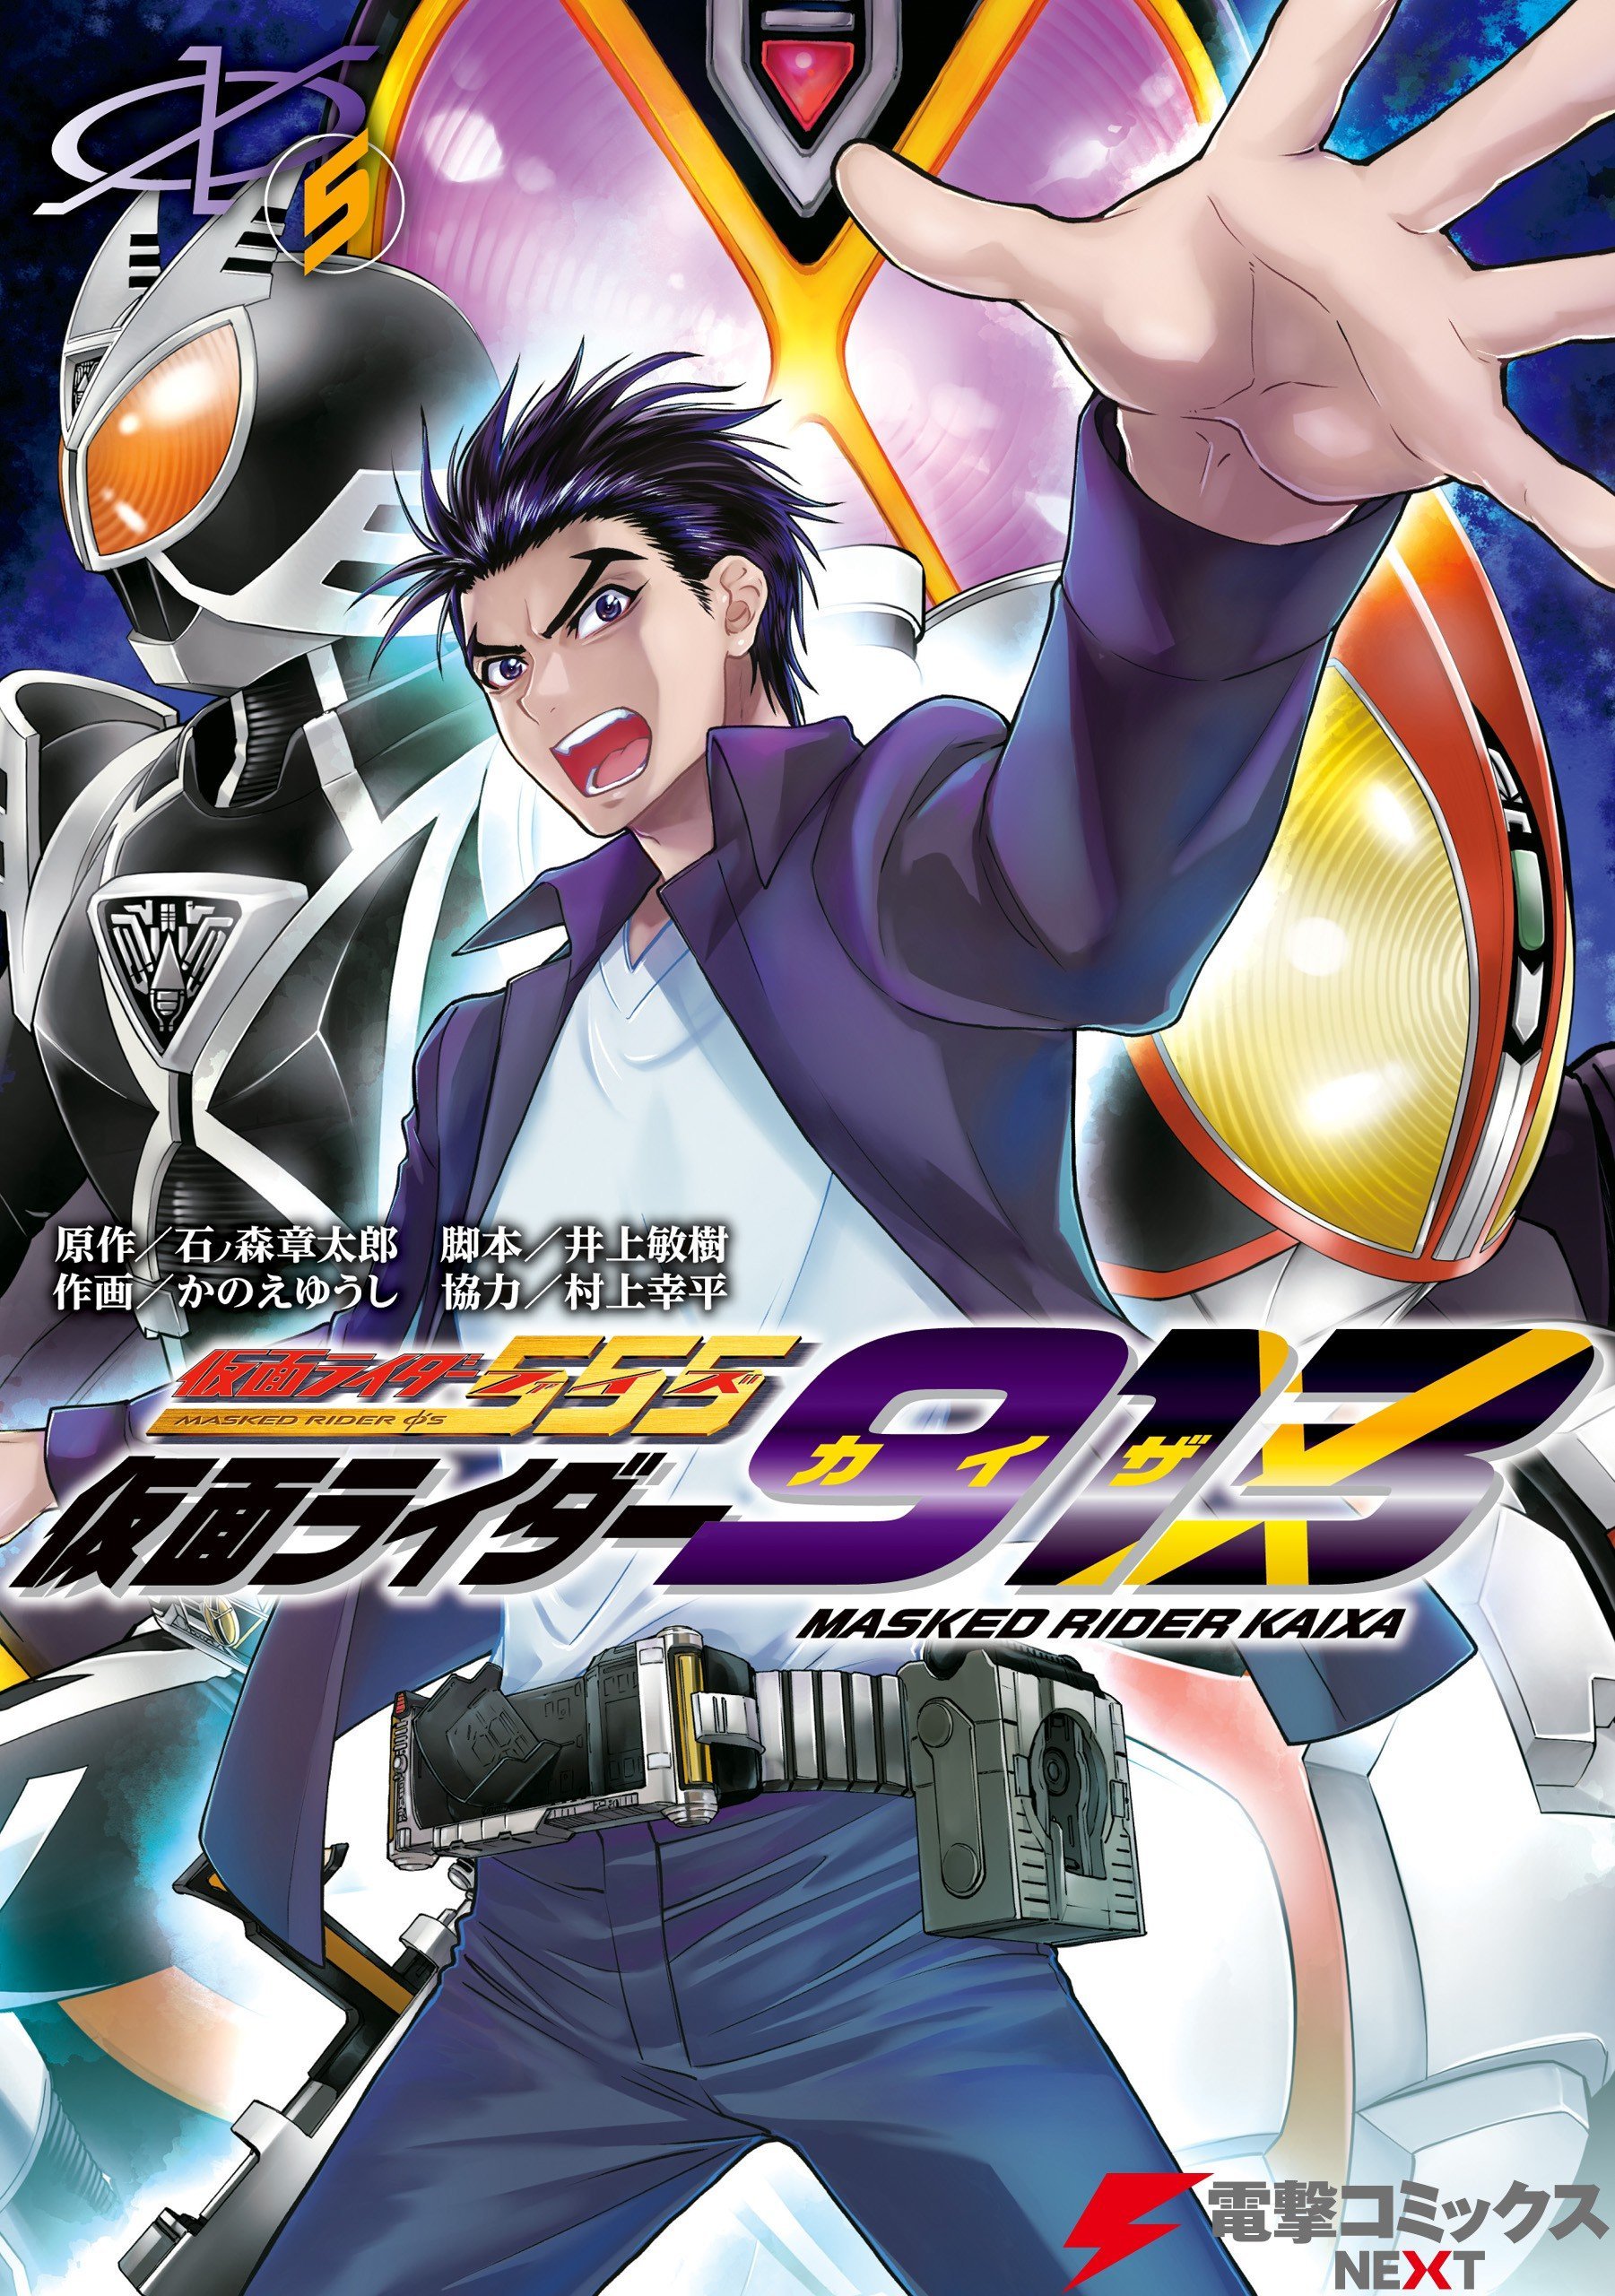 Kamen Rider 913 (Kaixa) cover 0